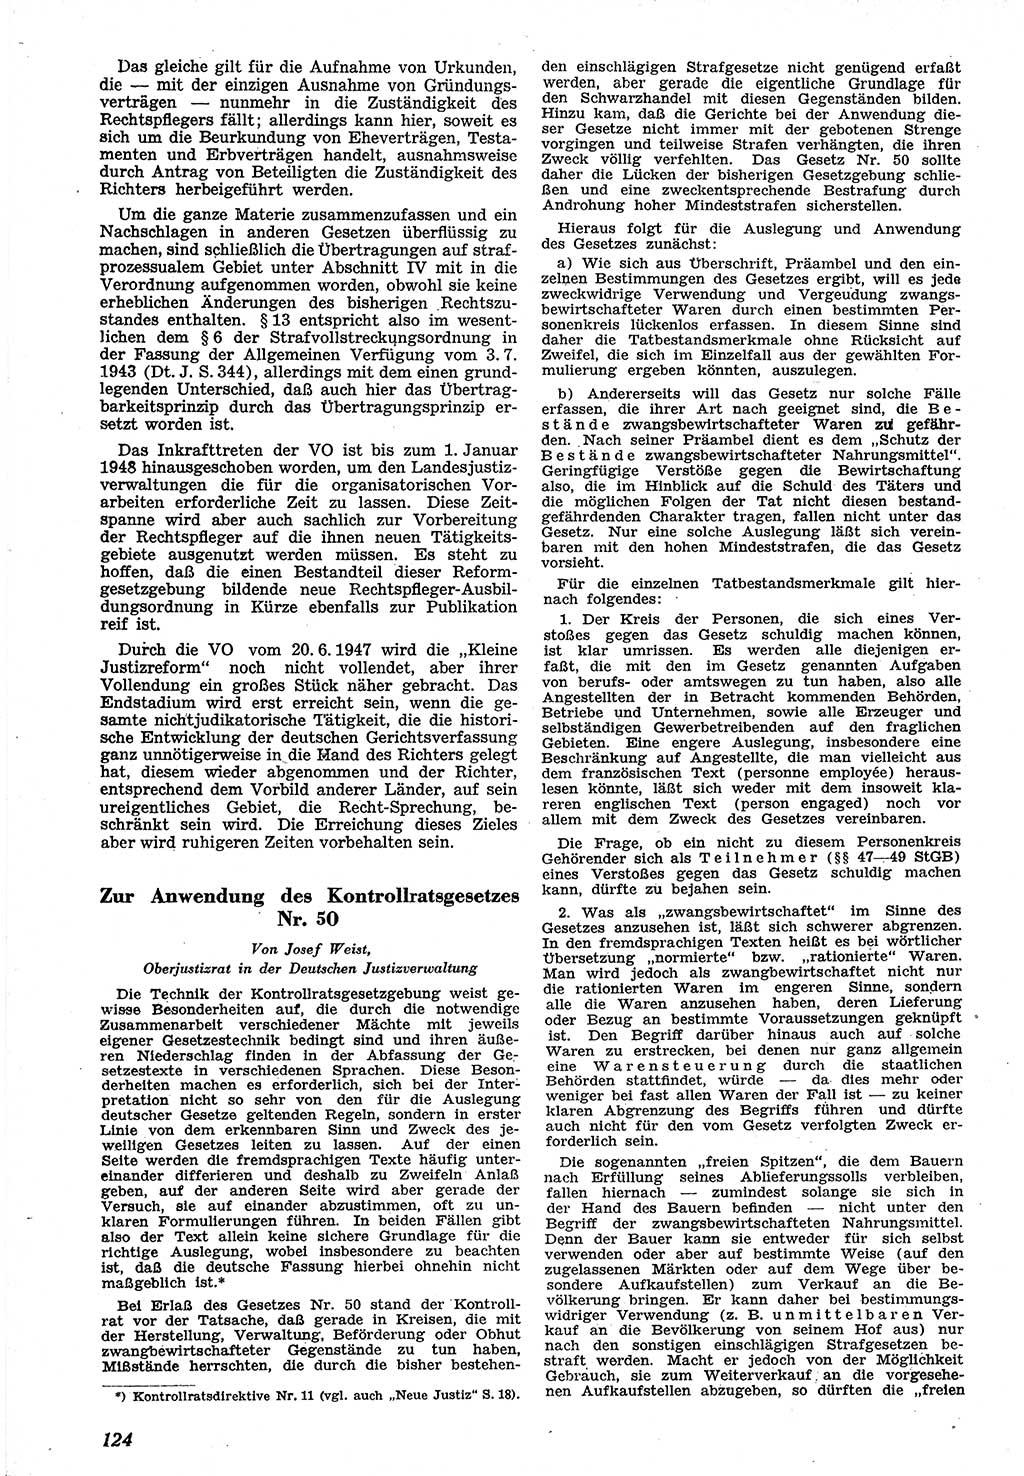 Neue Justiz (NJ), Zeitschrift für Recht und Rechtswissenschaft [Sowjetische Besatzungszone (SBZ) Deutschland], 1. Jahrgang 1947, Seite 124 (NJ SBZ Dtl. 1947, S. 124)